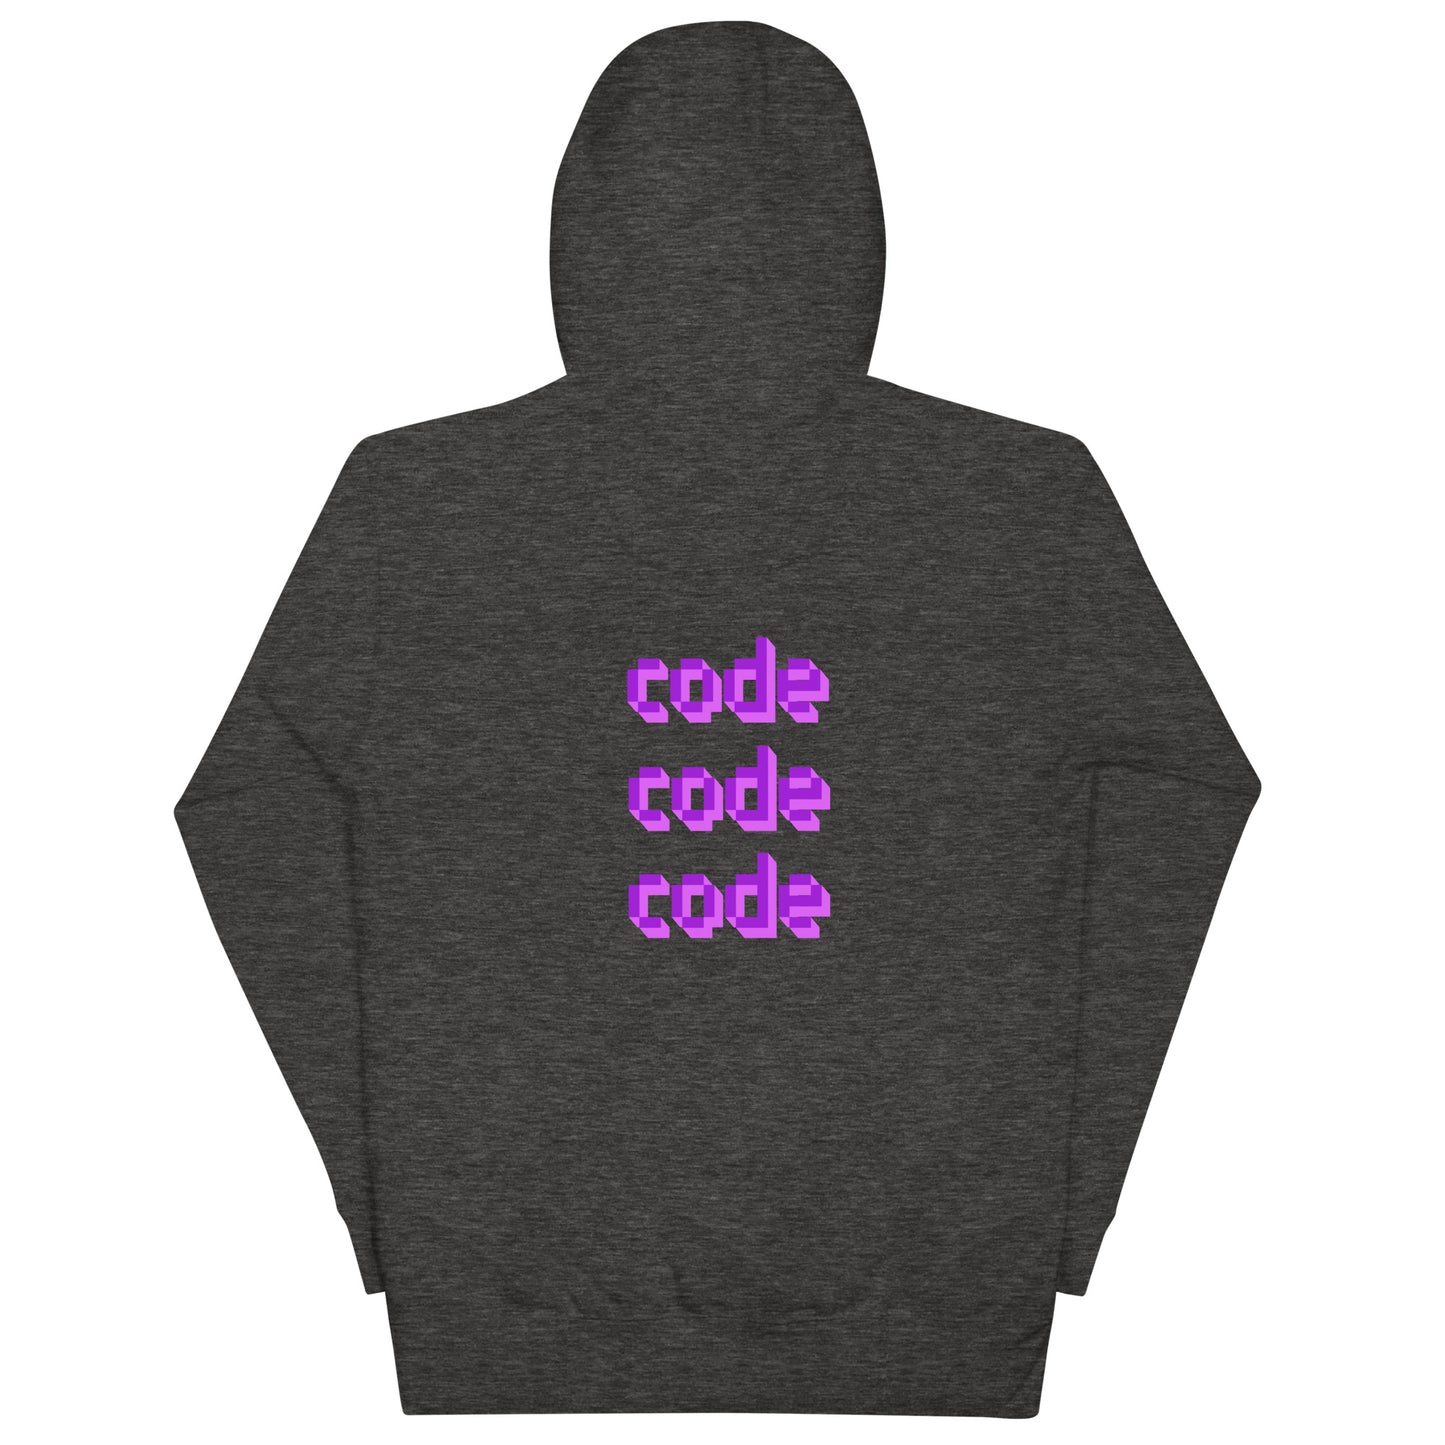 'code code code' unisex hoodie